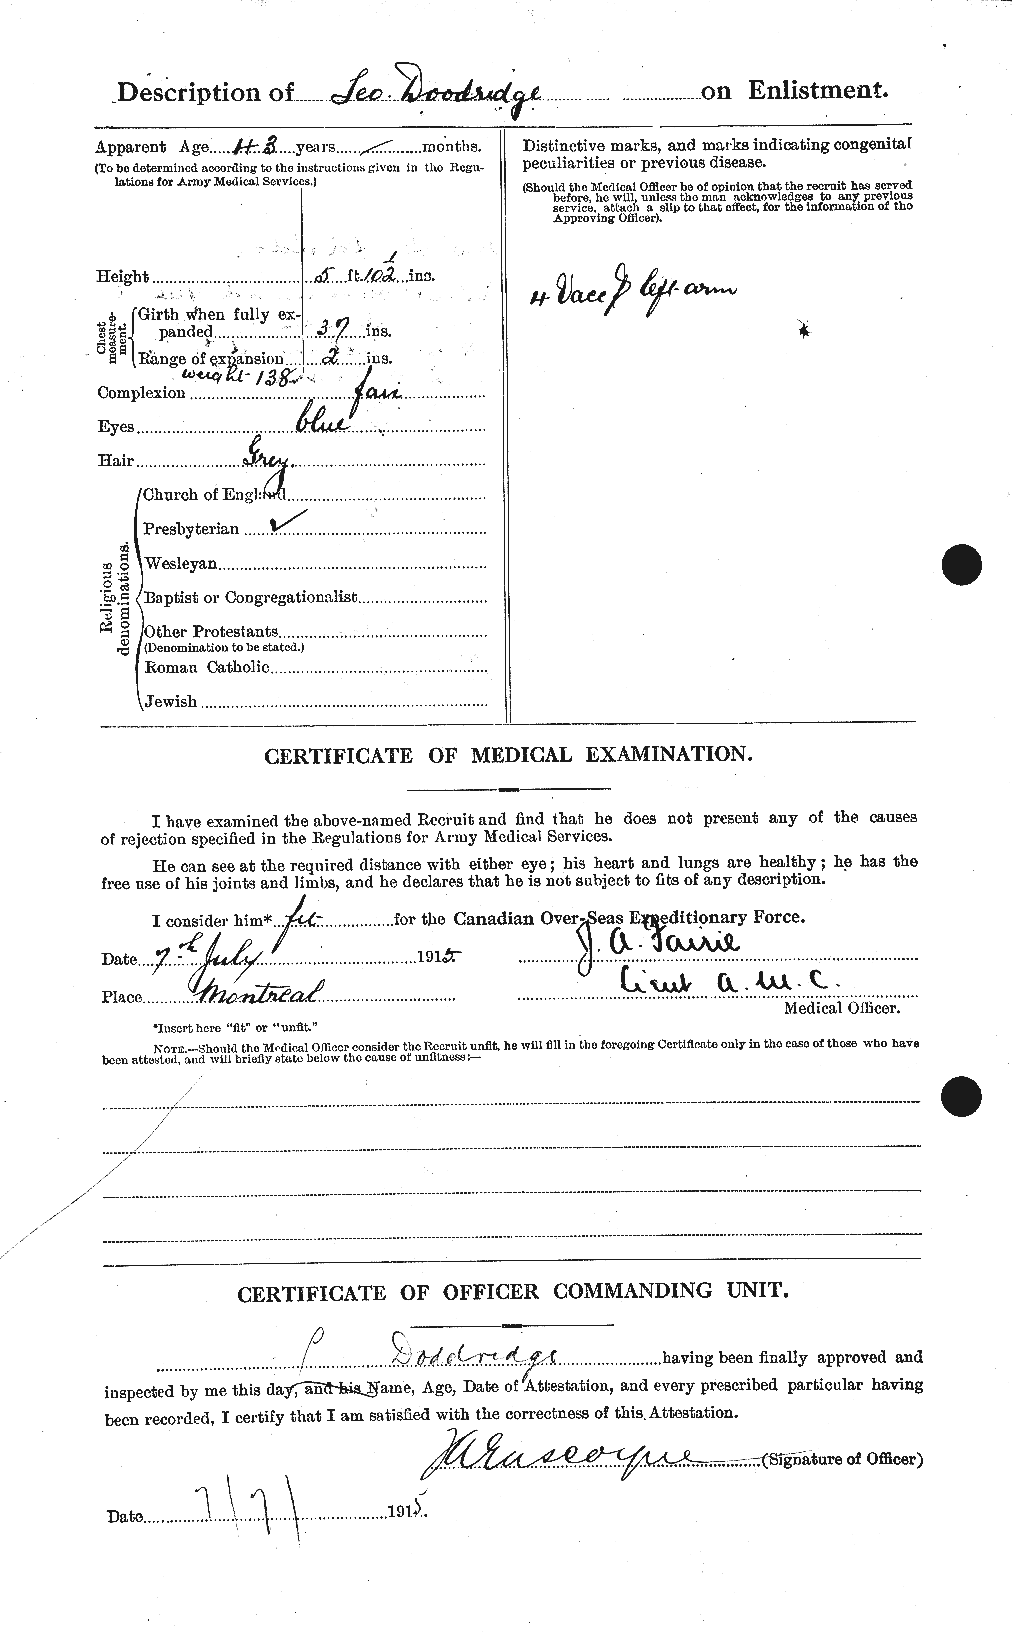 Dossiers du Personnel de la Première Guerre mondiale - CEC 294345b